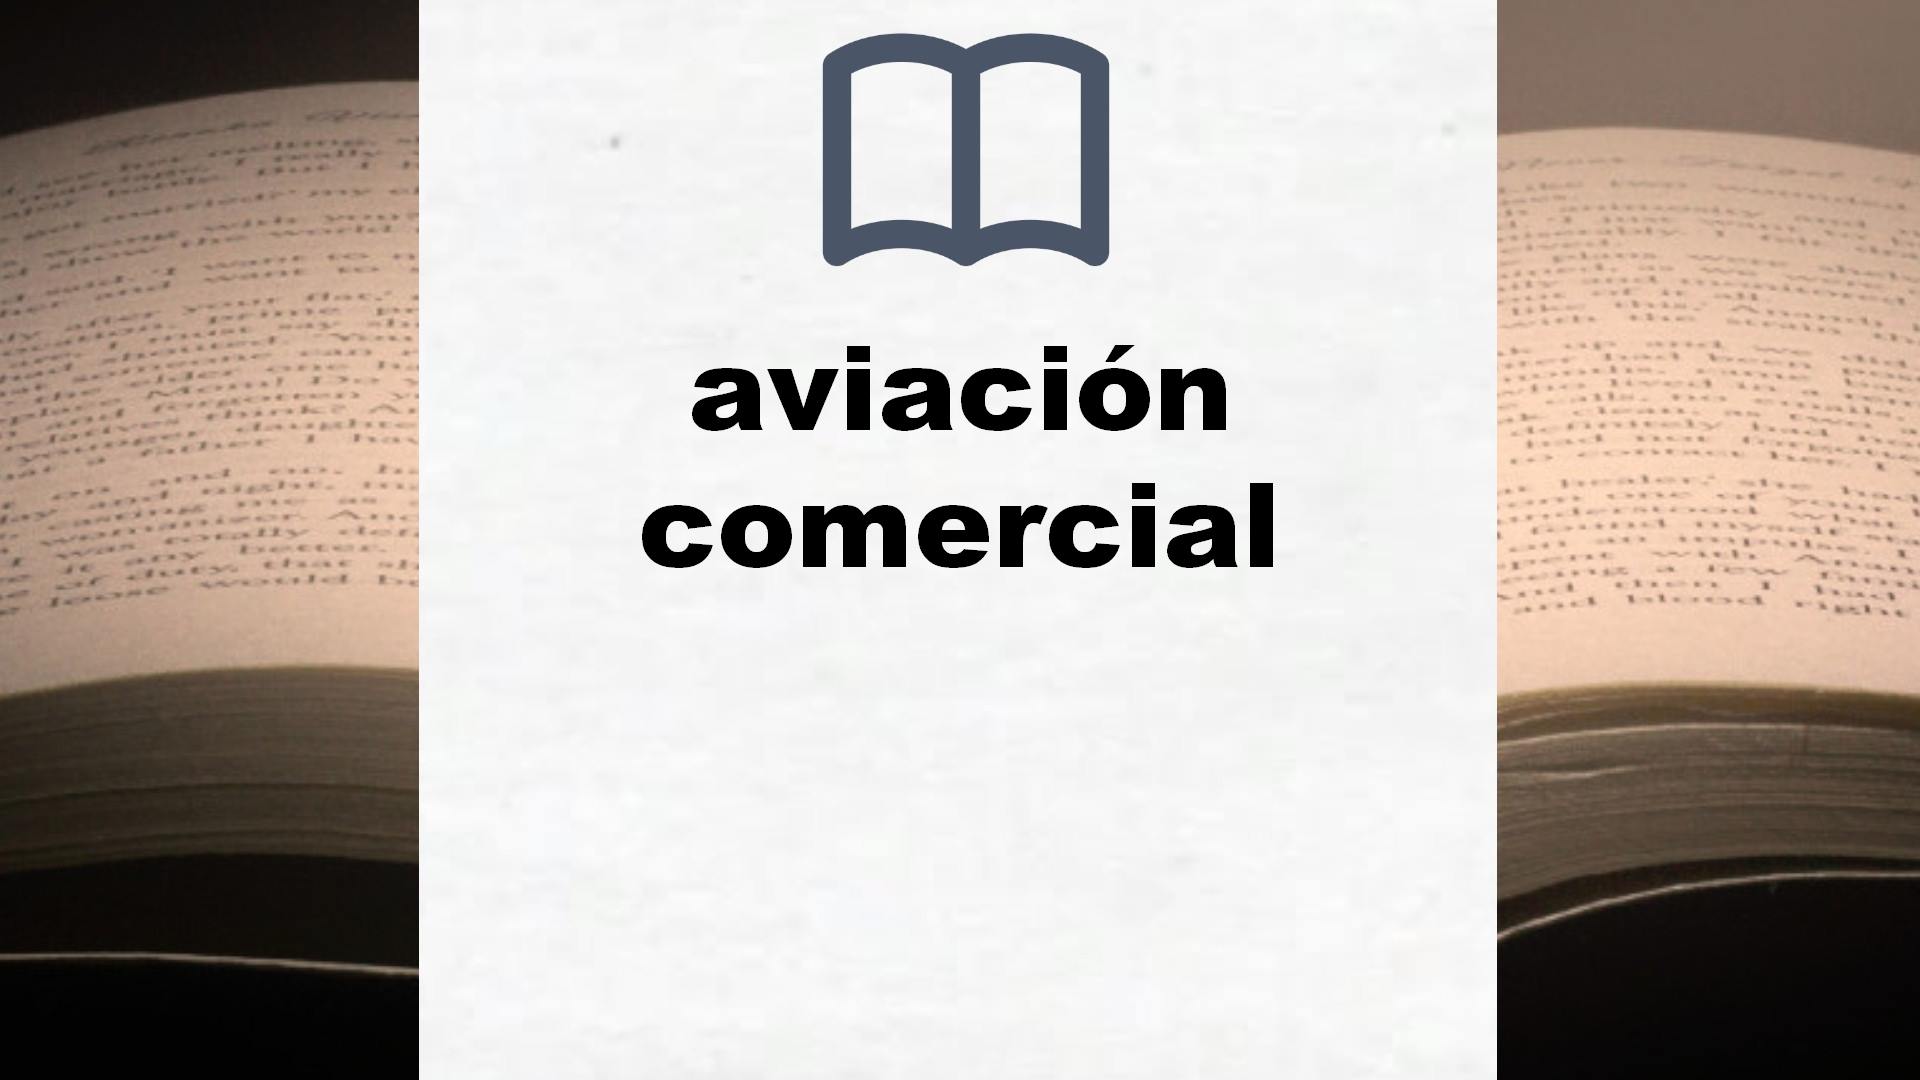 Libros sobre aviación comercial